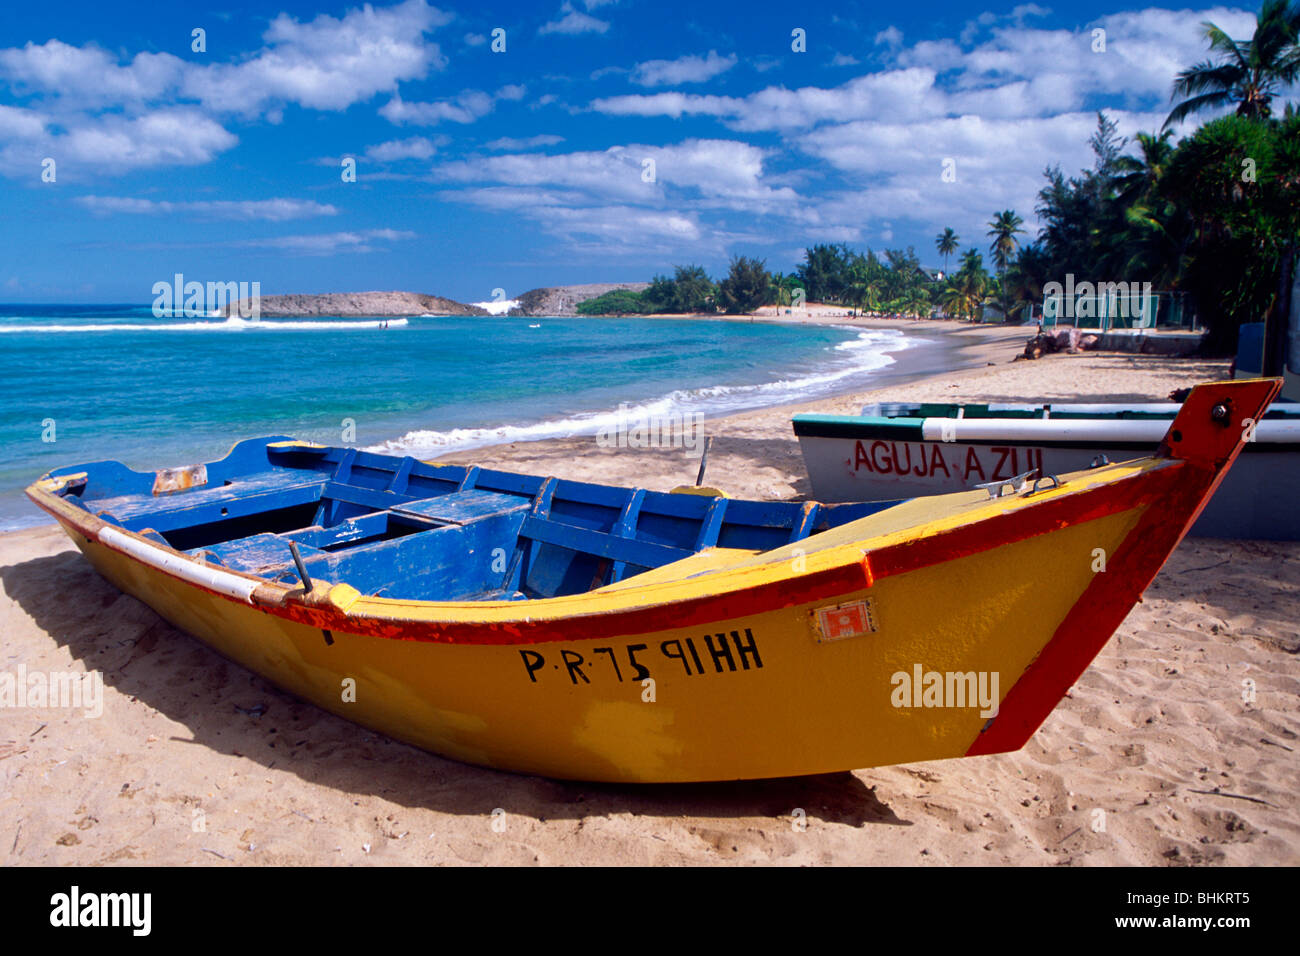 Bateau de pêche sur la playa , jobos isabela, Puerto Rico Banque D'Images